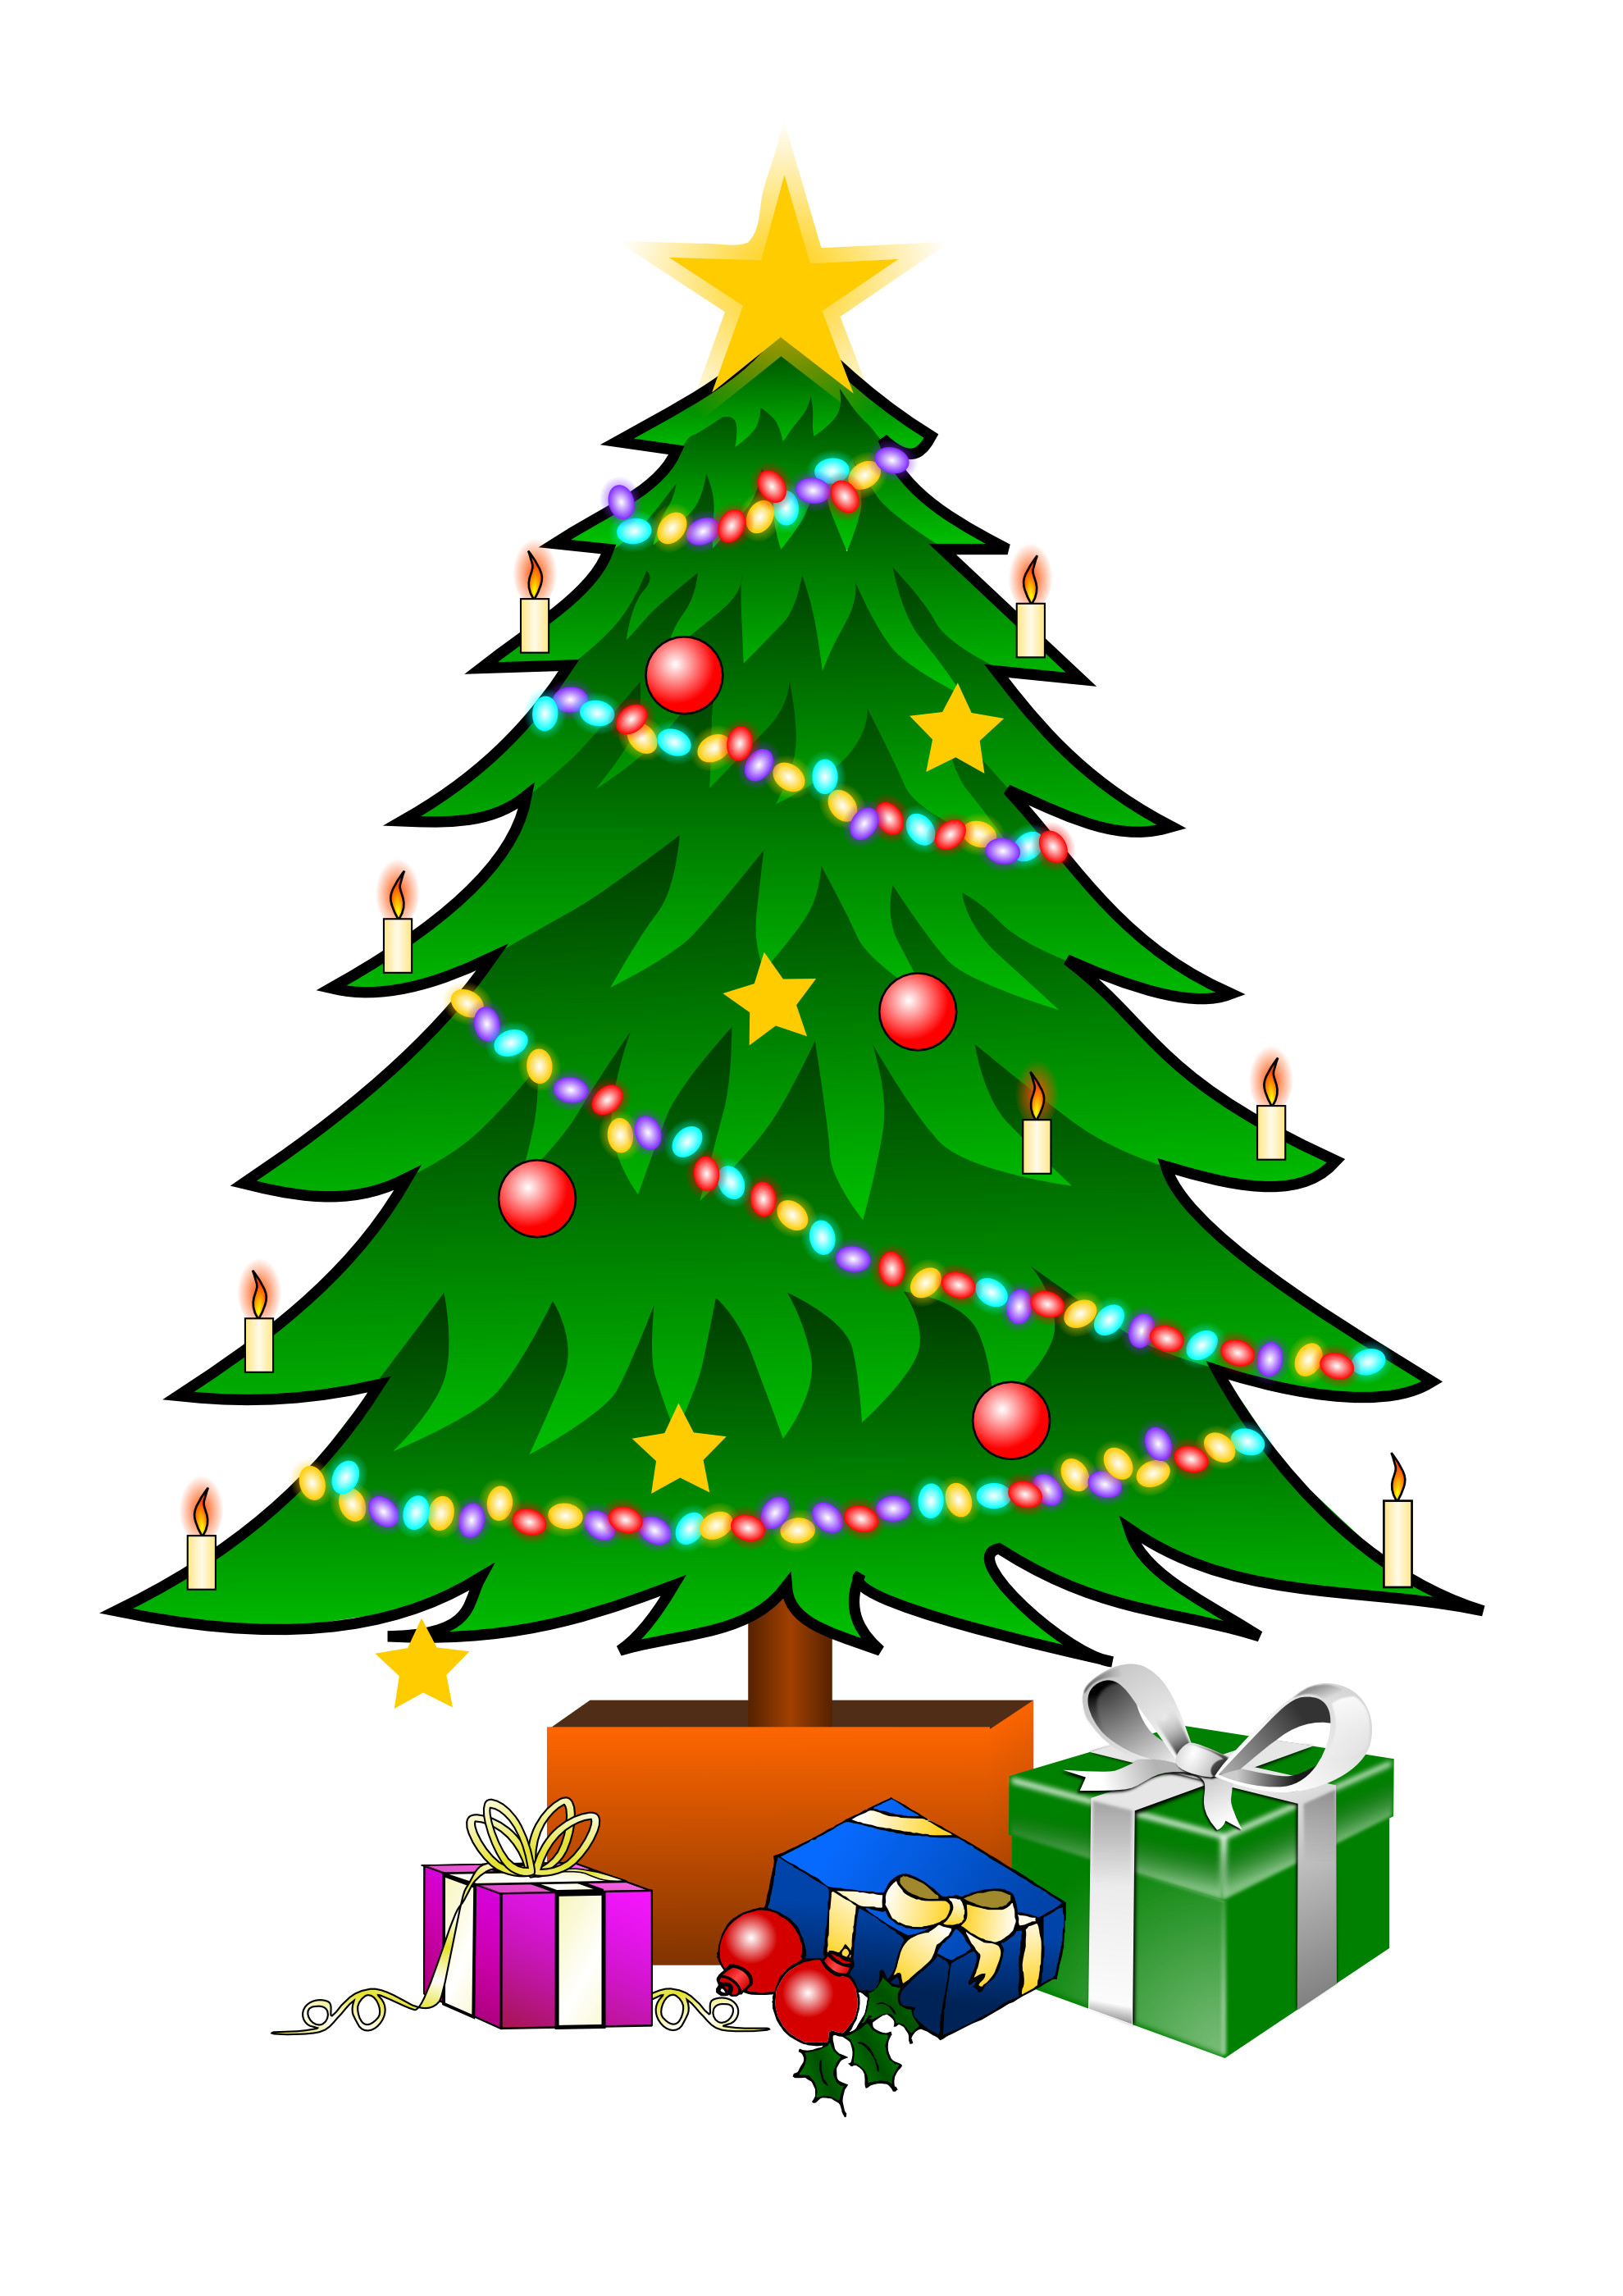 Christmas Tree Image PNG Image